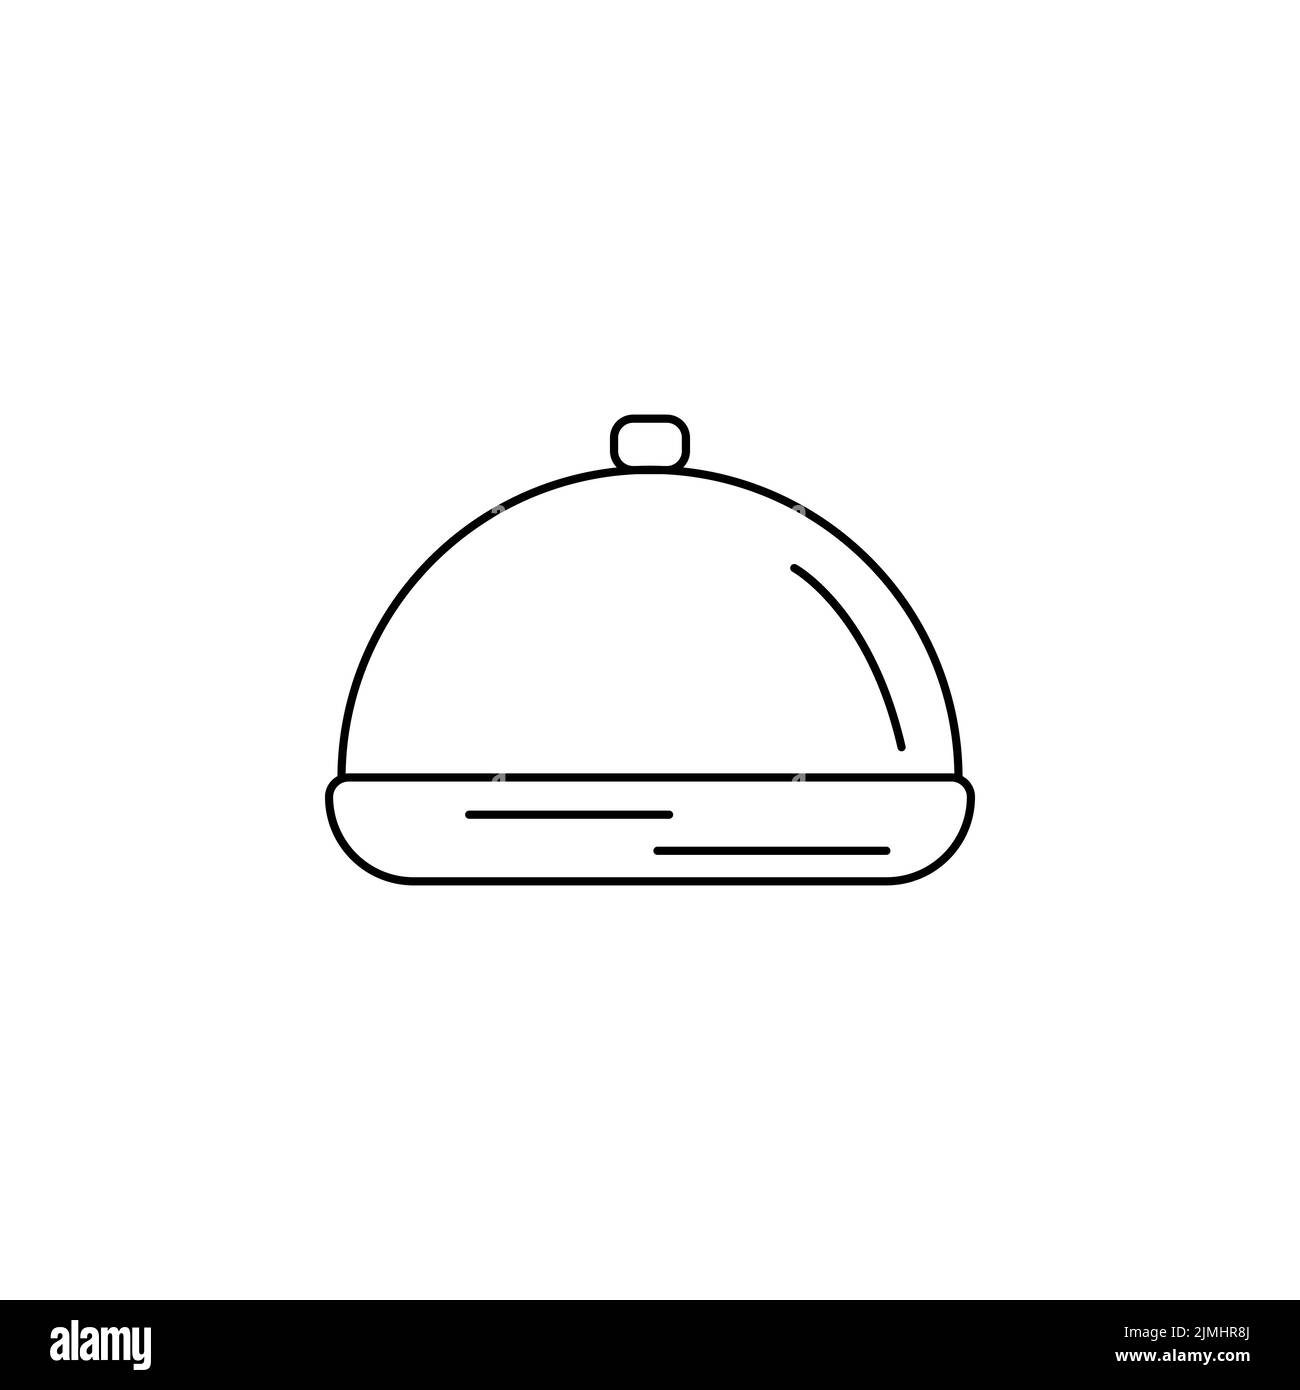 Geschirr geschlossen mit Kapellensymbol. Einfache schwarze Umrisse Küche Container isoliert Vektor. Accessoire Logo Küchenutensilien. Web Element Küche Stock Vektor